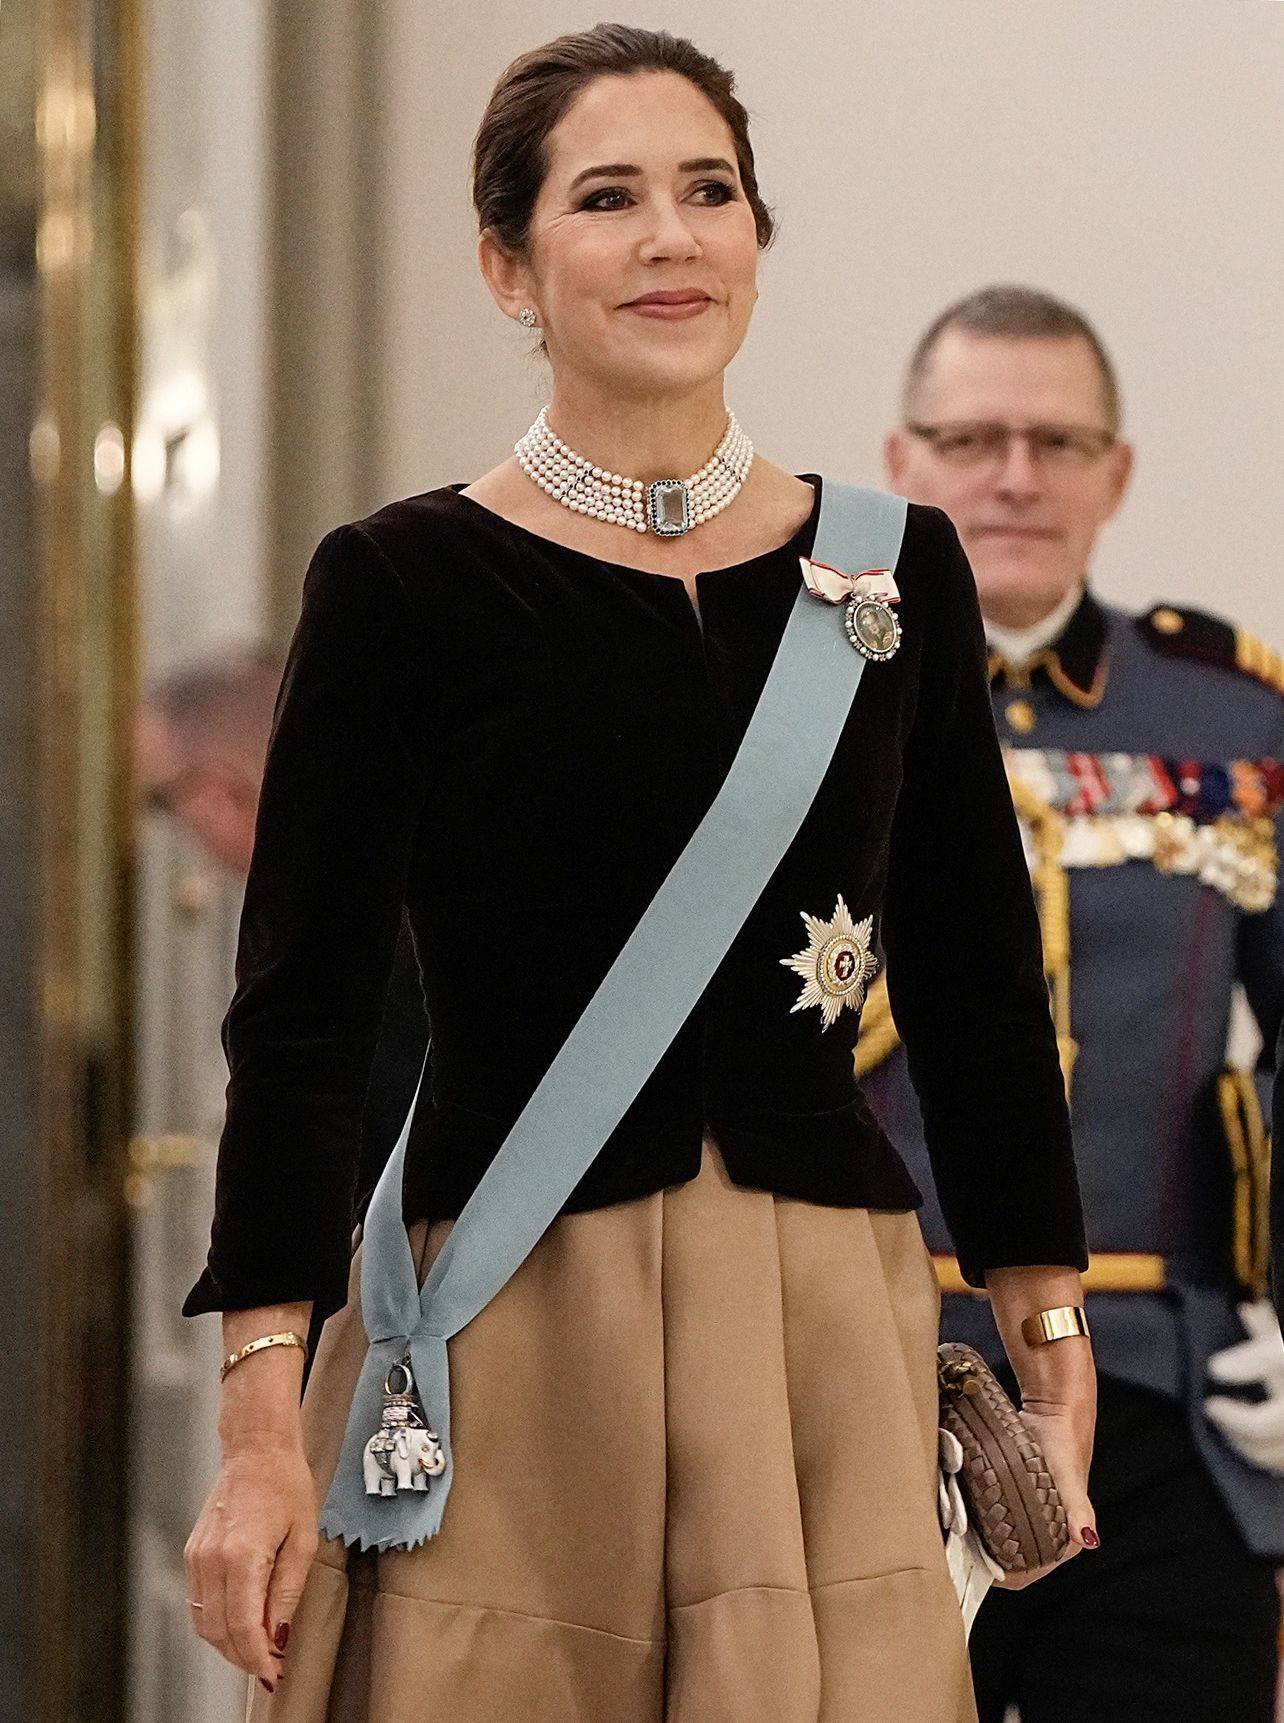 Księżna Maria w welurowym żakiecie i balowej spódnicy. Przyszła królowa Danii, księżna Maria, w kontrastowej stylizacji udowadnia, że jest gotowa do objęcia roli najlepiej ubranej monarchinii.